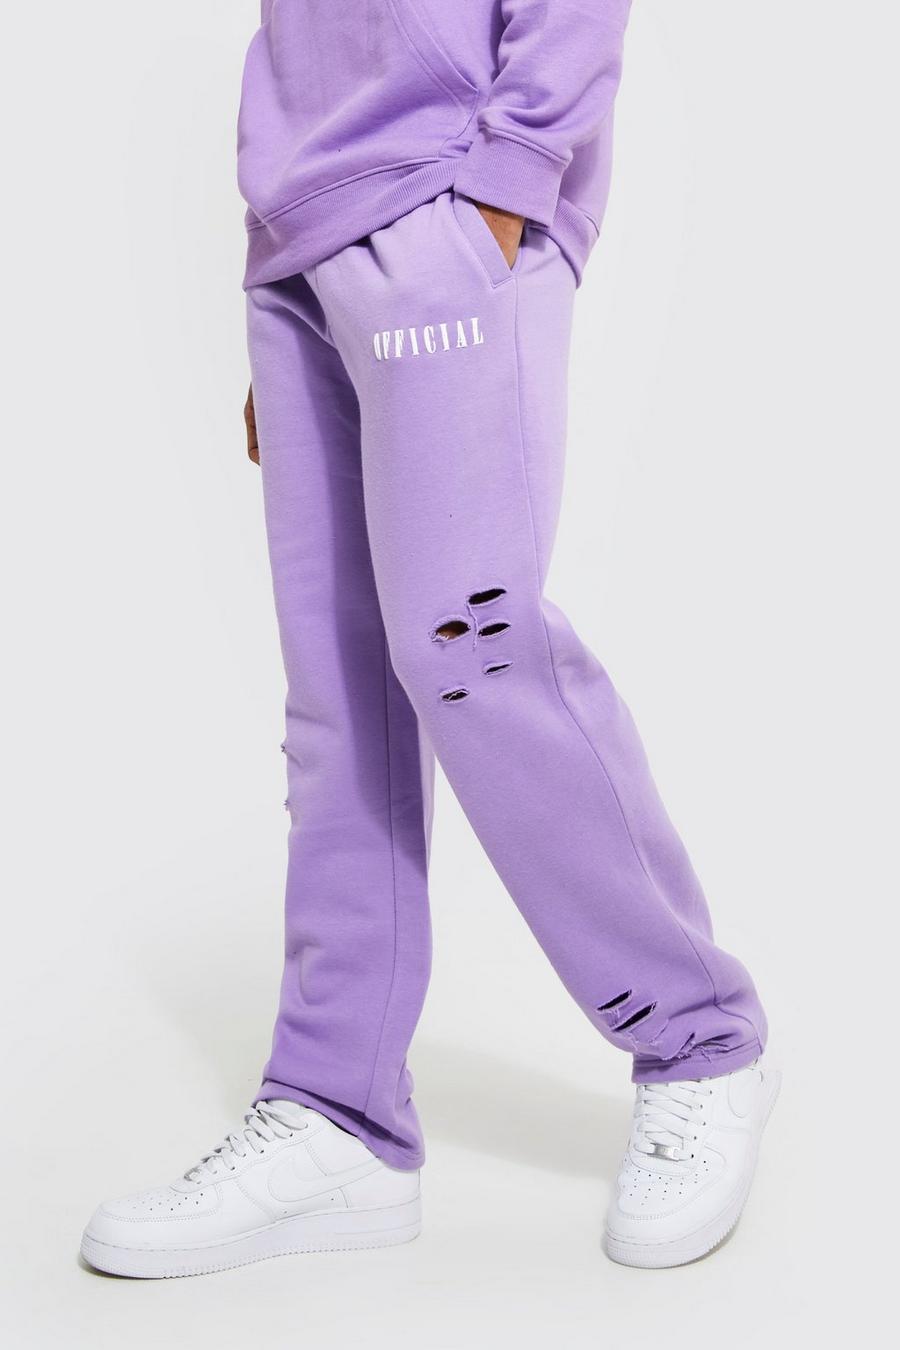 Pantaloni tuta a gamba ampia Official oversize effetto smagliato, Lilac morado